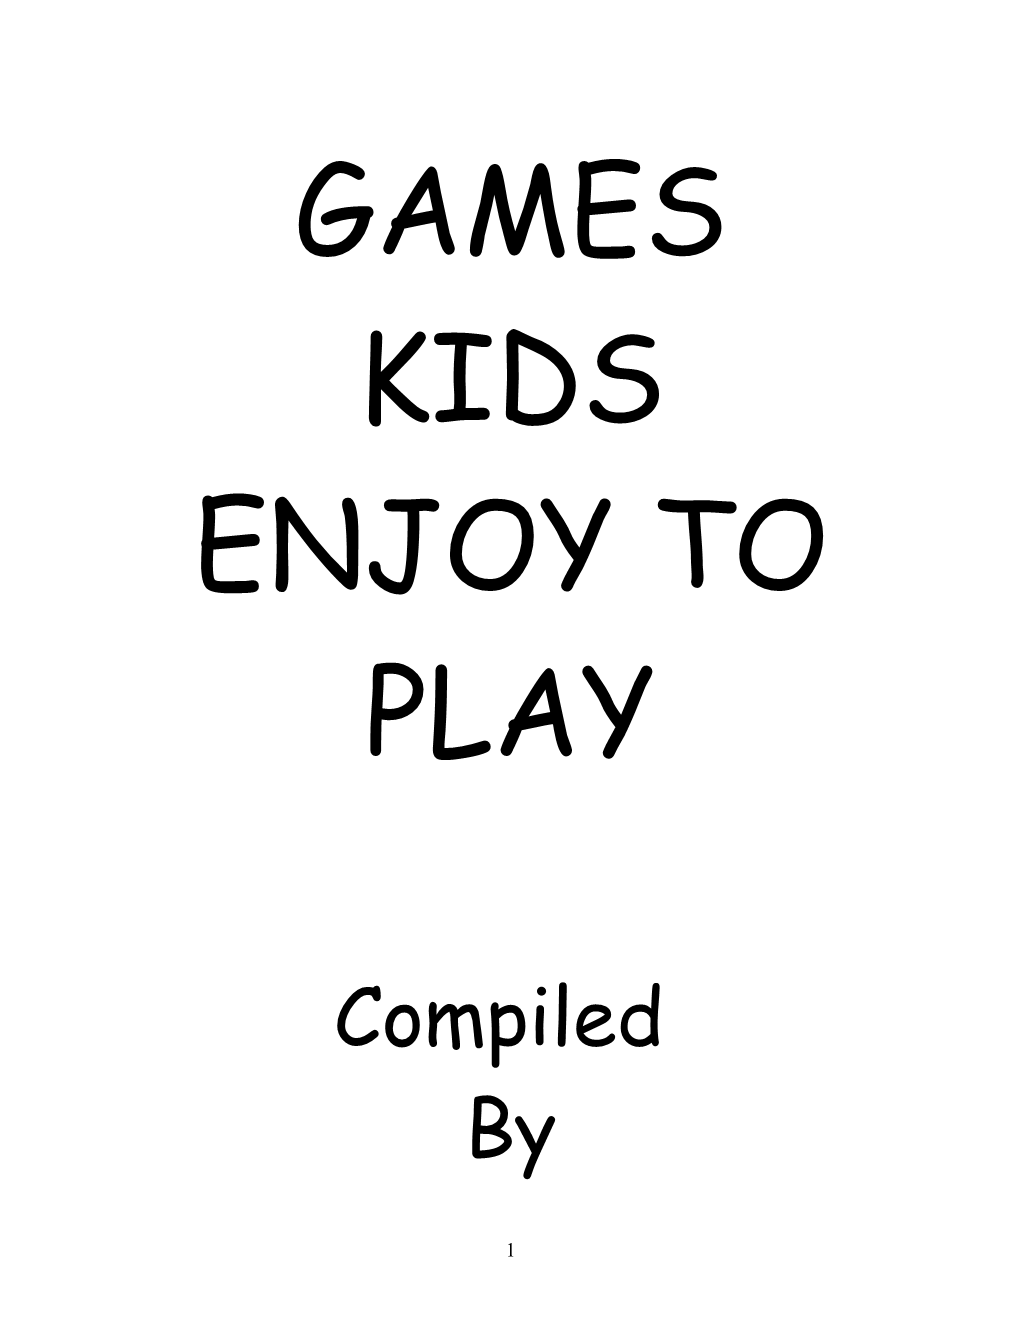 Games Kids Enjoy to Play